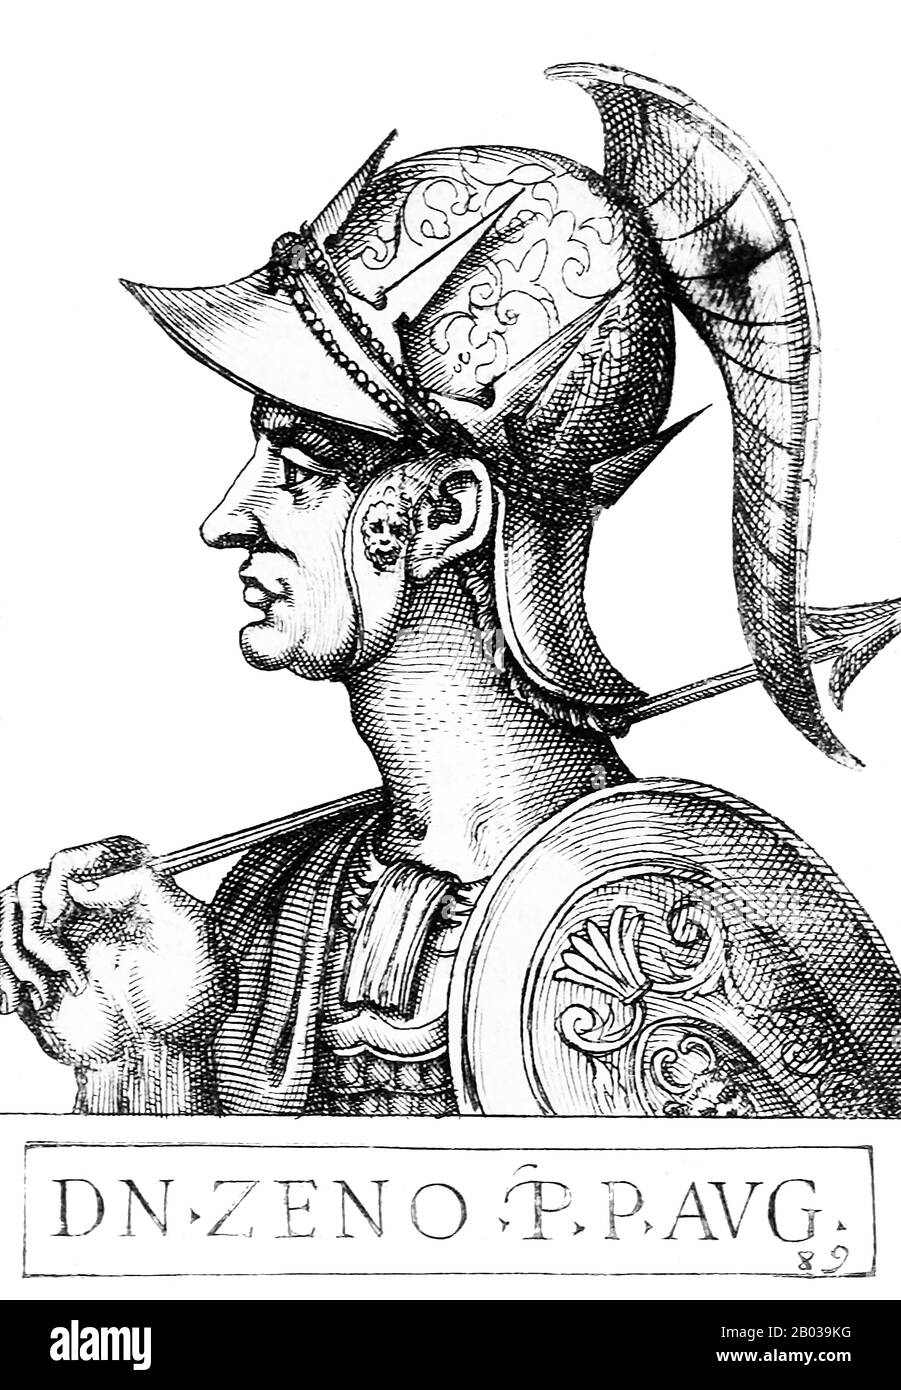 Zeno el Isauriano (425-491), originalmente conocido como Tarasis Kodisa Rosombladadiotes, era un oficial isauriano que servía en el ejército romano oriental. Se convirtió en aliado del emperador Leo, casándose con su hija Ariadne y ayudándole a asesinar al general Alan Aspar, que tenía mucha influencia en Constantinopla. Tomó el nombre de Zeno, al parecer de otro famoso oficial isauriano que había luchado contra Attila, para hacerse más aceptable para la jerarquía romana. Cuando Leo murió en 474, el hijo de Zeno, Leo II, se convirtió en emperador, pero como tenía sólo siete años en ese momento, estaba convencido de nombrar a su padre co-emperador. Ze Foto de stock